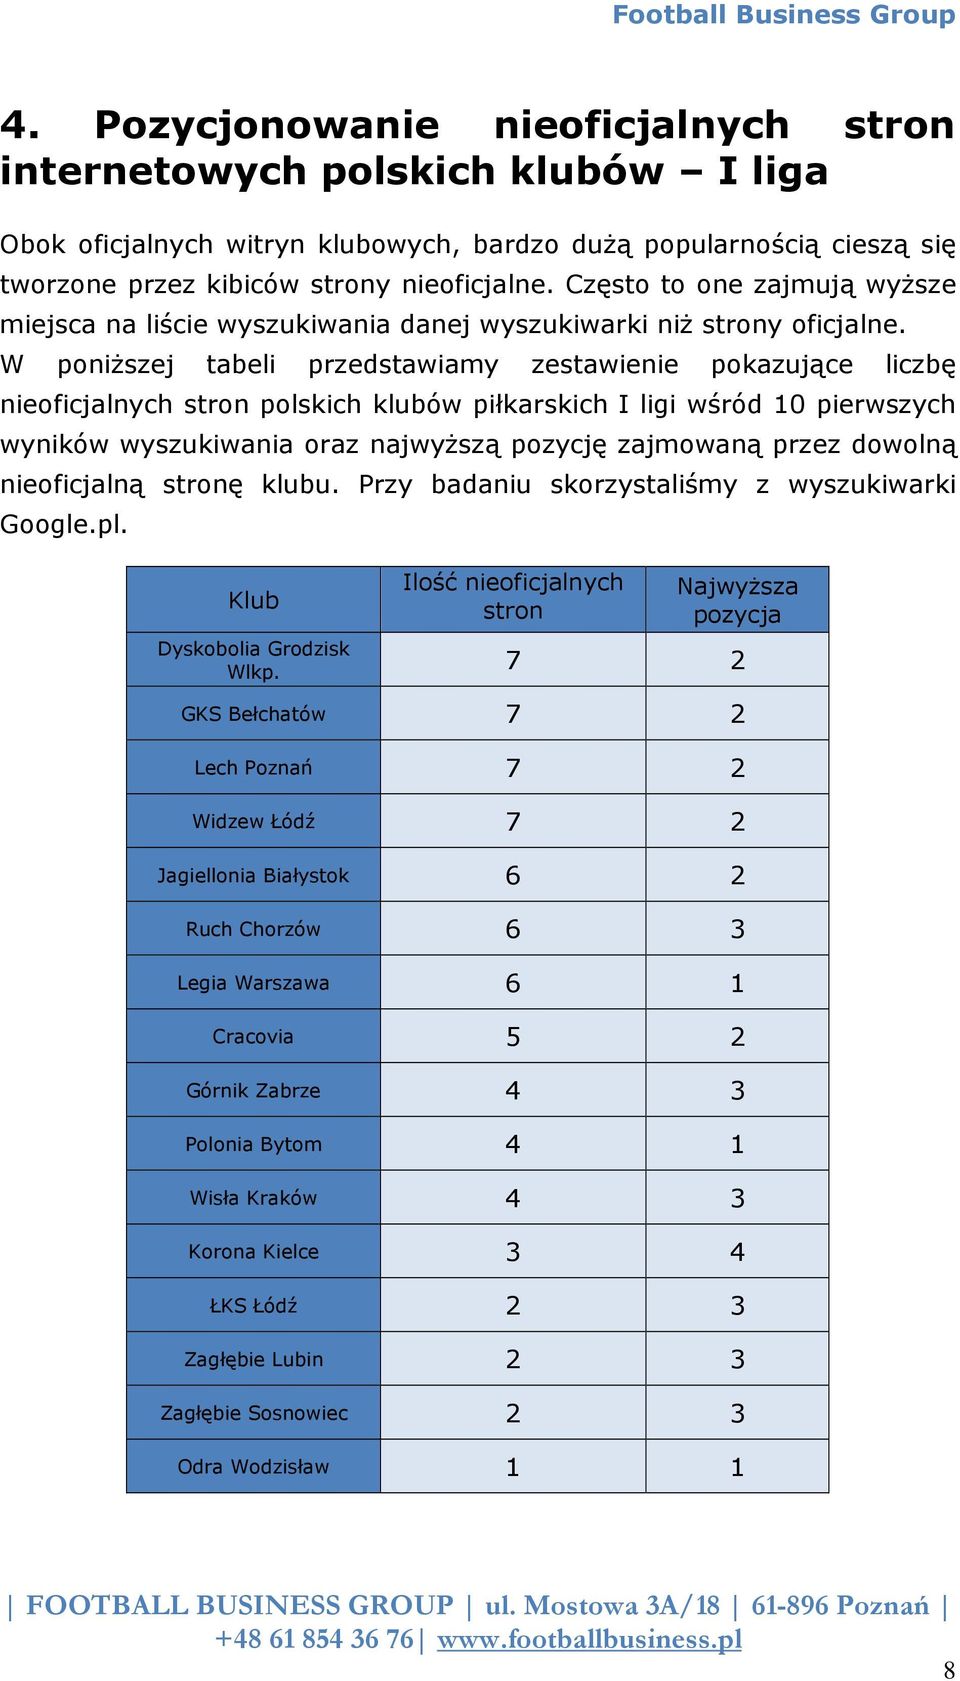 W poniższej tabeli przedstawiamy zestawienie pokazujące liczbę nieoficjalnych stron polskich klubów piłkarskich I ligi wśród 10 pierwszych wyników wyszukiwania oraz najwyższą pozycję zajmowaną przez